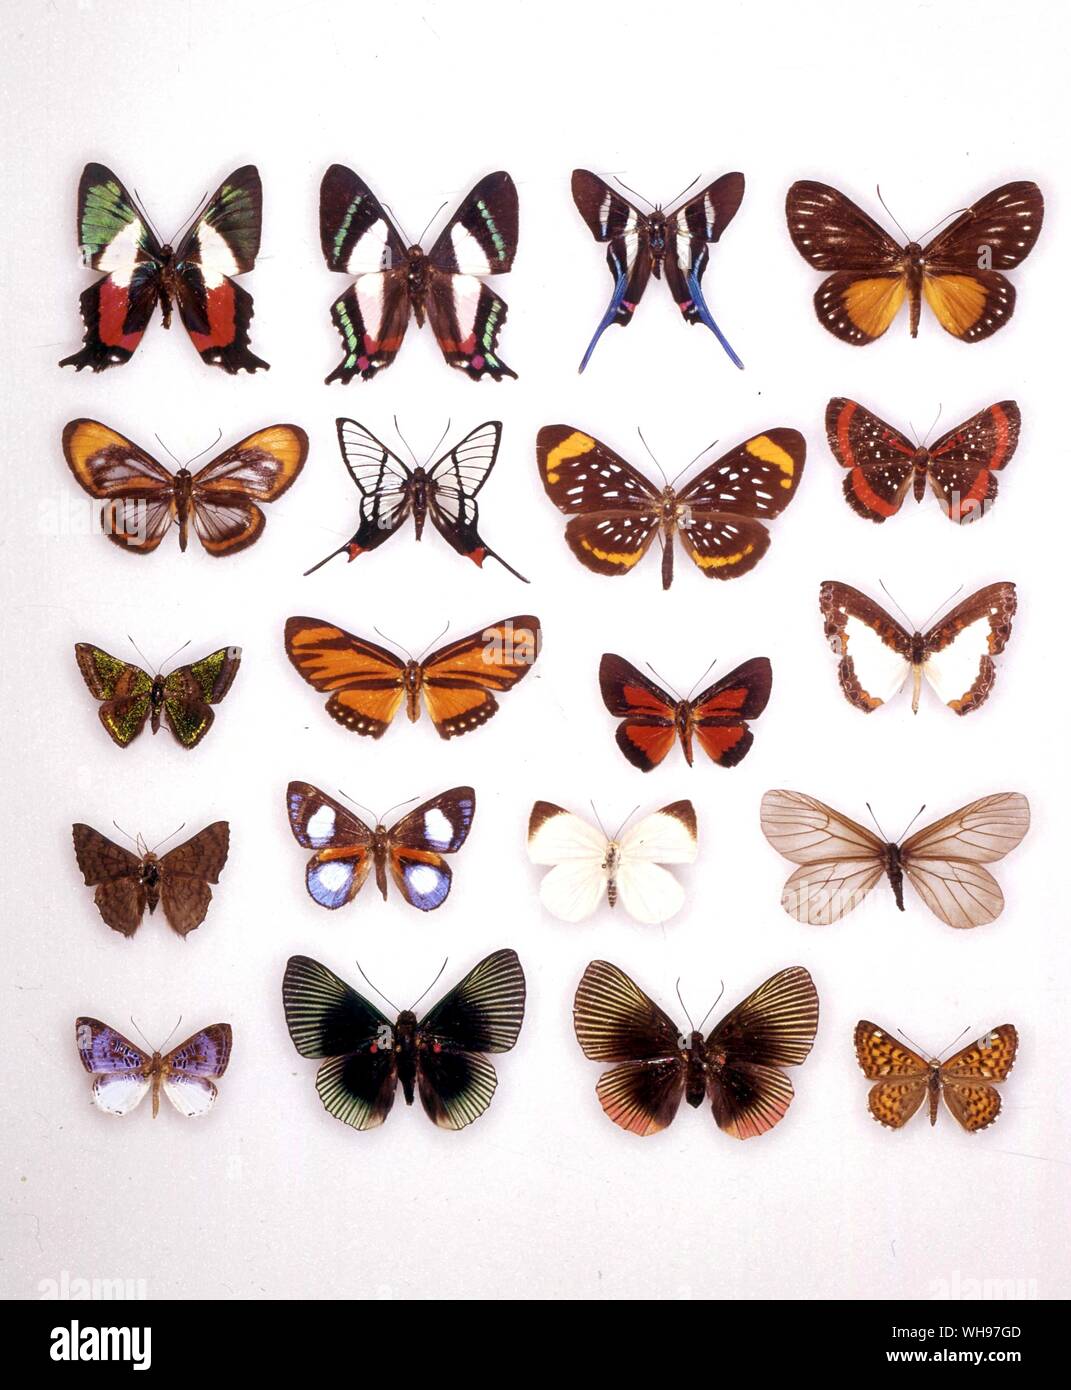 Butterflies/moths - (left to right) Ancycluris formosissima (underneath), Ancycluris formosissima, Rhetus arcius, Ithomeis eulema, Ithomeis corena, Chorinea faunus, Stalachtis euterpe, Amarynthis meneria, Caria mantinea, Esthemopsis thyatira (female), Esthemopsis thyatira (male), Nymphidium onaeum, Lasaia sessilis, Polystichtis siaka, Theope pieridoides, Styx infernalis, Echenais alector, Lyropteryx apollonia (male), Lyropteryx apollonia (female), Apodemia nais Stock Photo